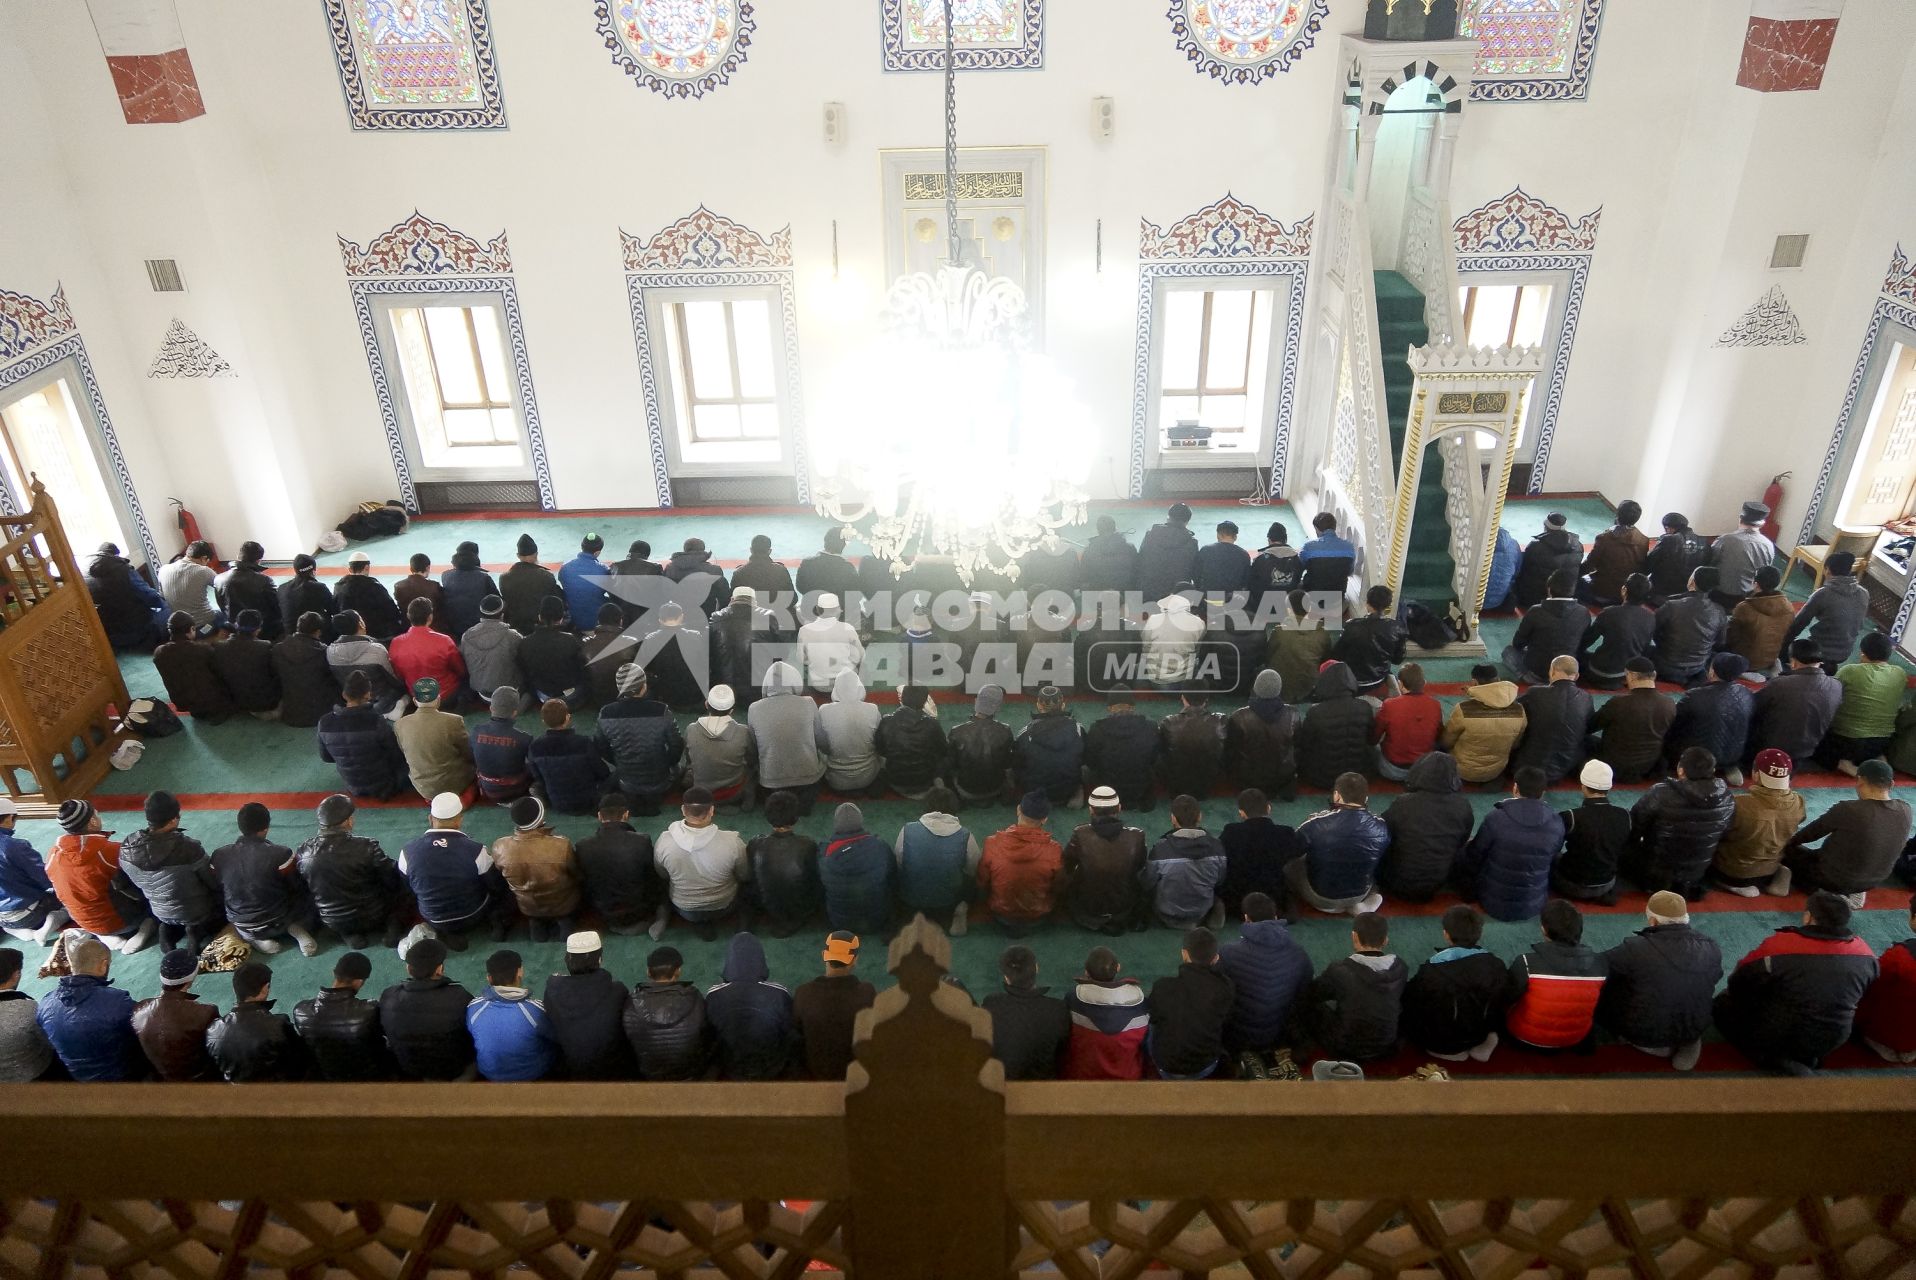 Мусульмане молятся в день праздника жертвоприношения Курбан-байрам в Медной мечети имени имама Исмаила аль-Бухари в городе Верхняя Пышма